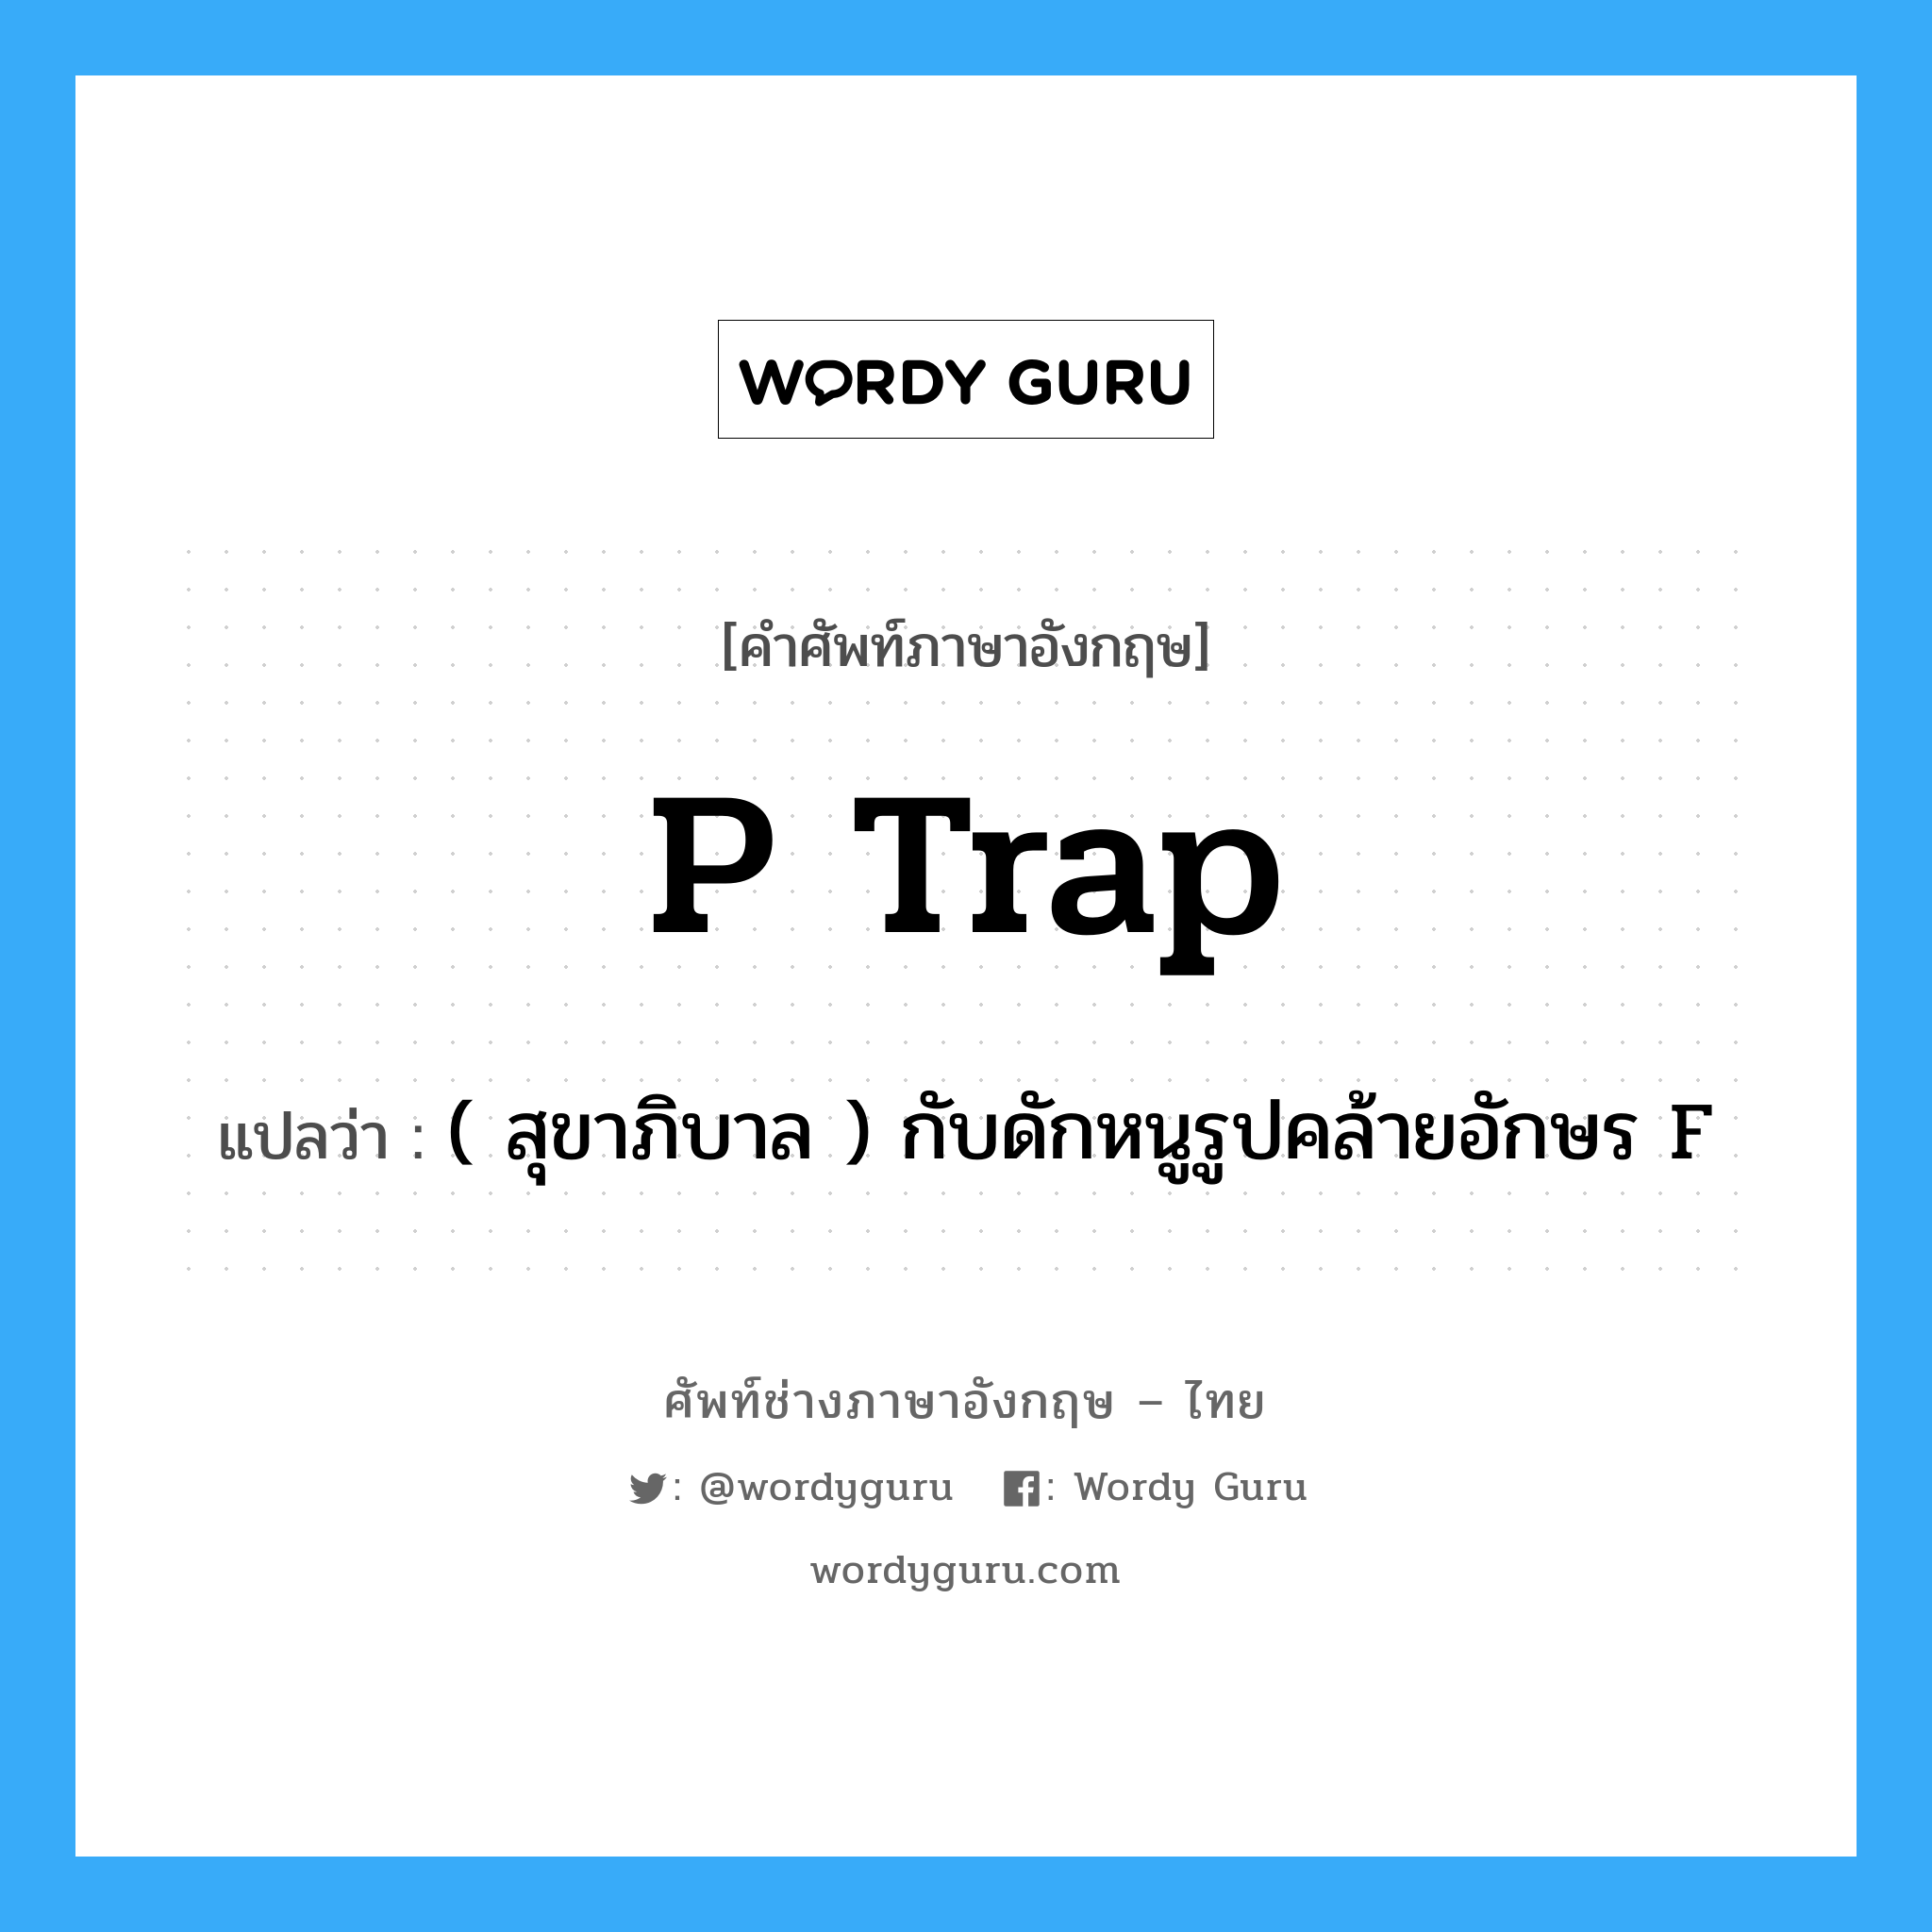 P trap แปลว่า?, คำศัพท์ช่างภาษาอังกฤษ - ไทย P trap คำศัพท์ภาษาอังกฤษ P trap แปลว่า ( สุขาภิบาล ) กับดักหนูรูปคล้ายอักษร F